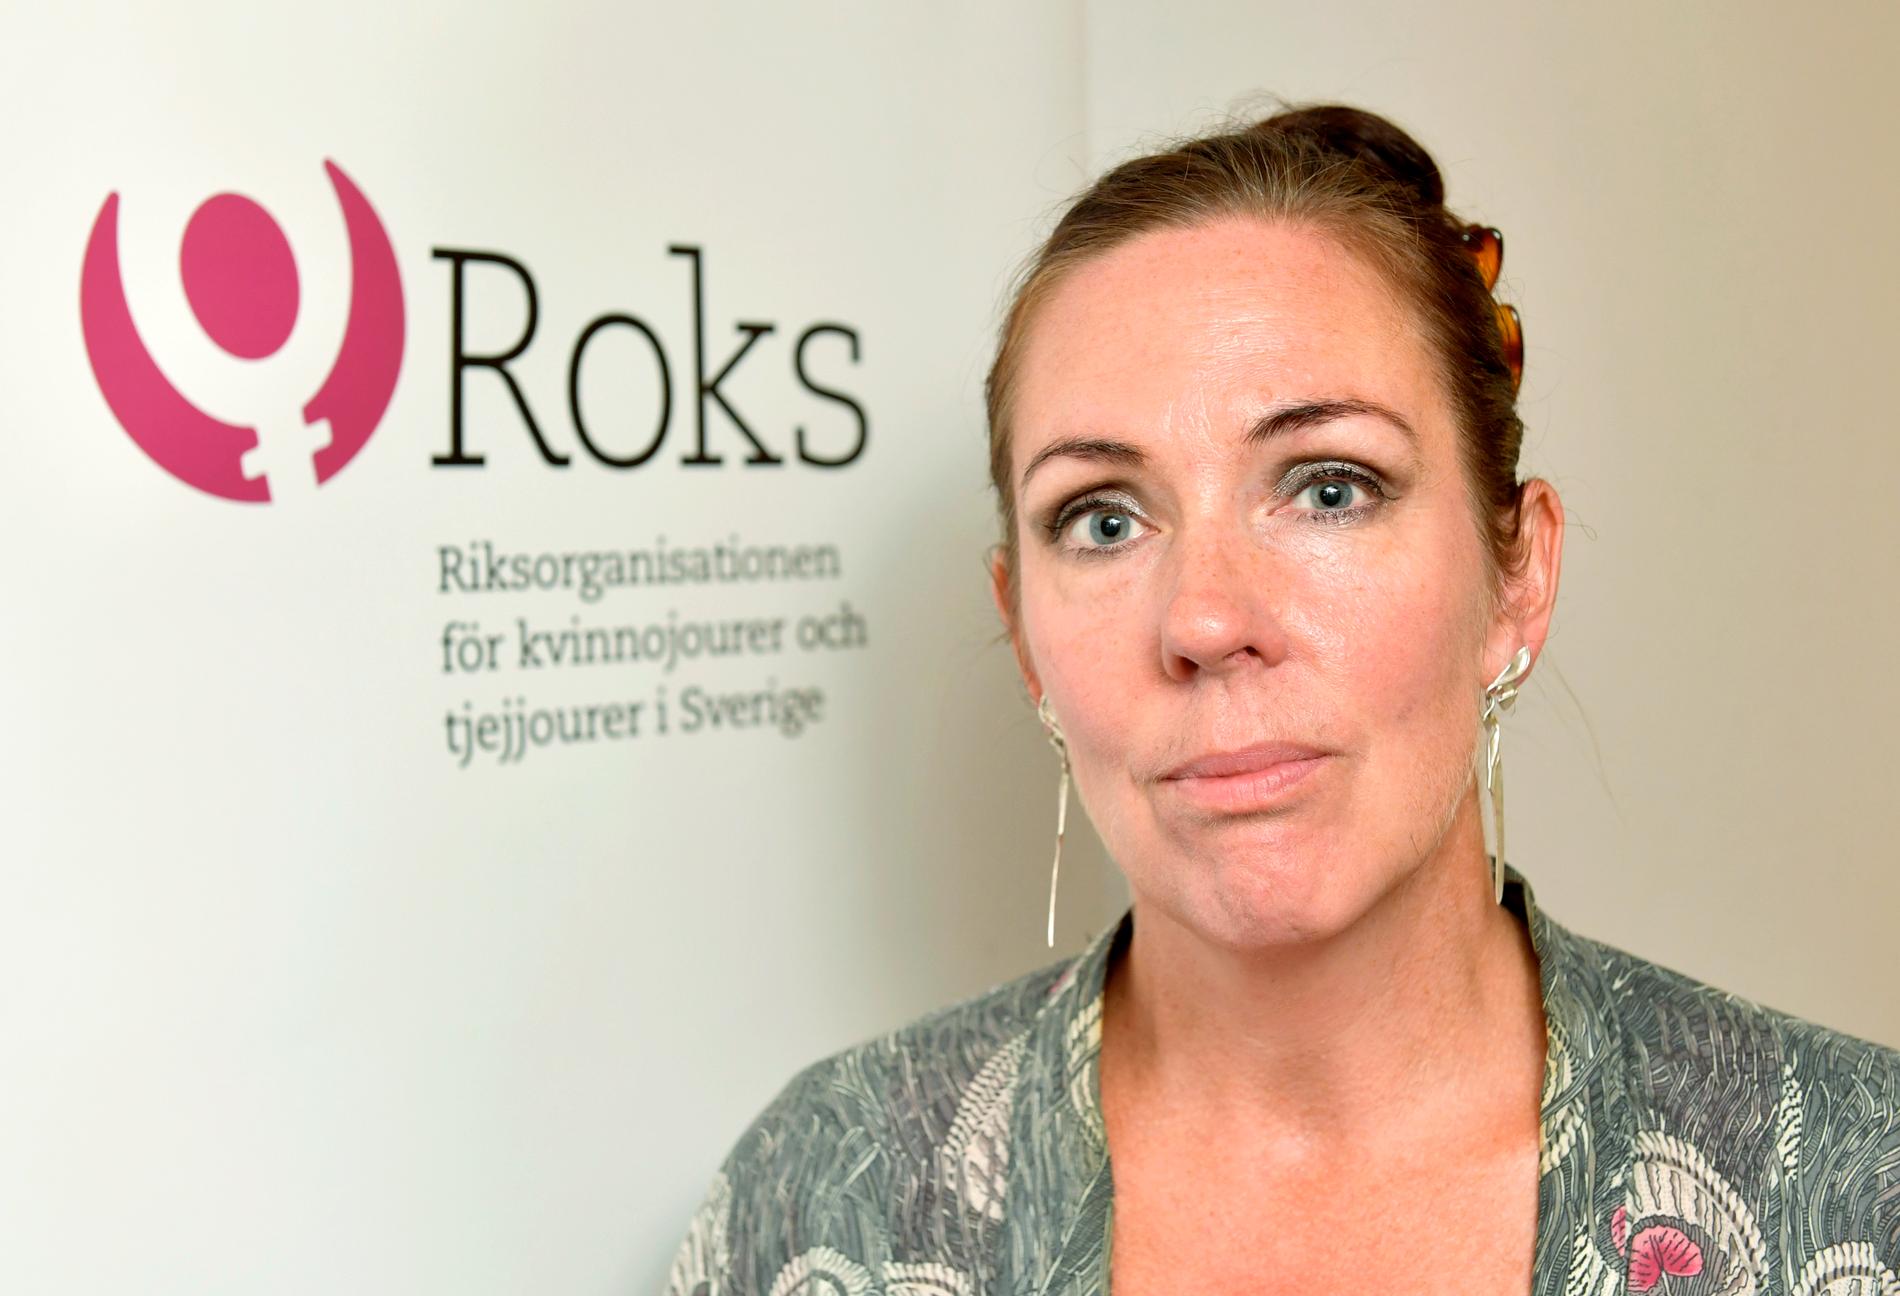 Jenny Westerstrand, ordförande Roks, Riksorganisationen för kvinnojourer och tjejjourer i Sverige.